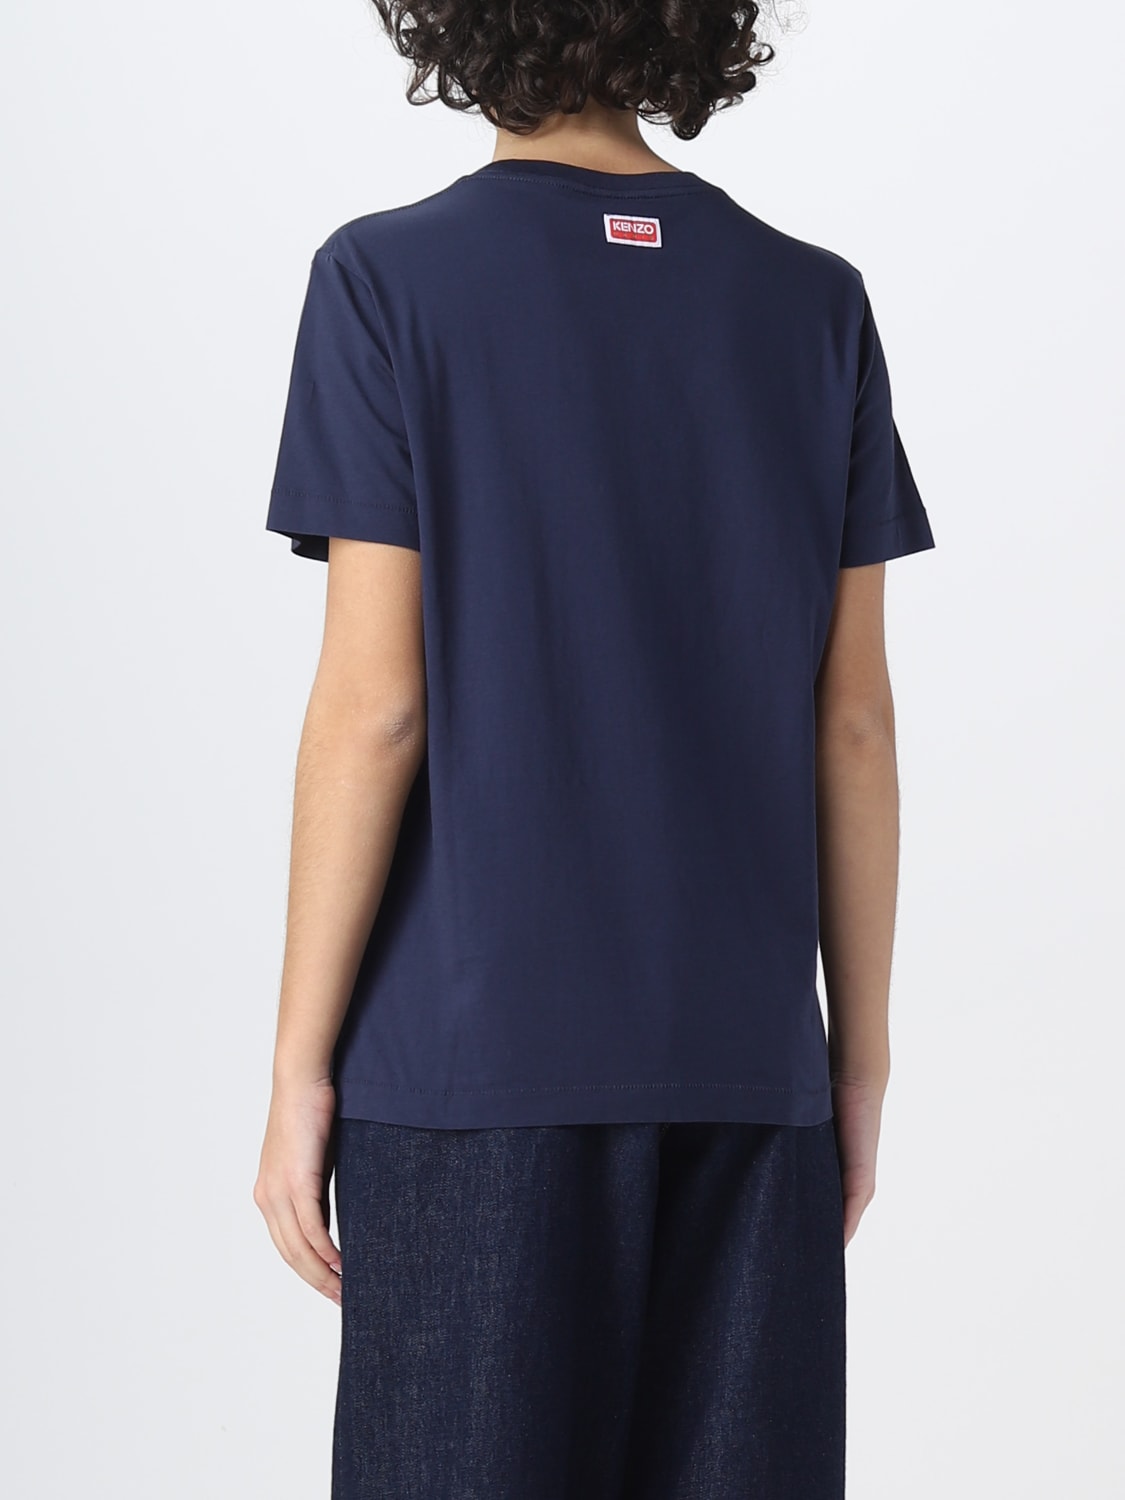 T-shirt Kenzo: T-shirt Boke Flower Kenzo in cotone blue 2